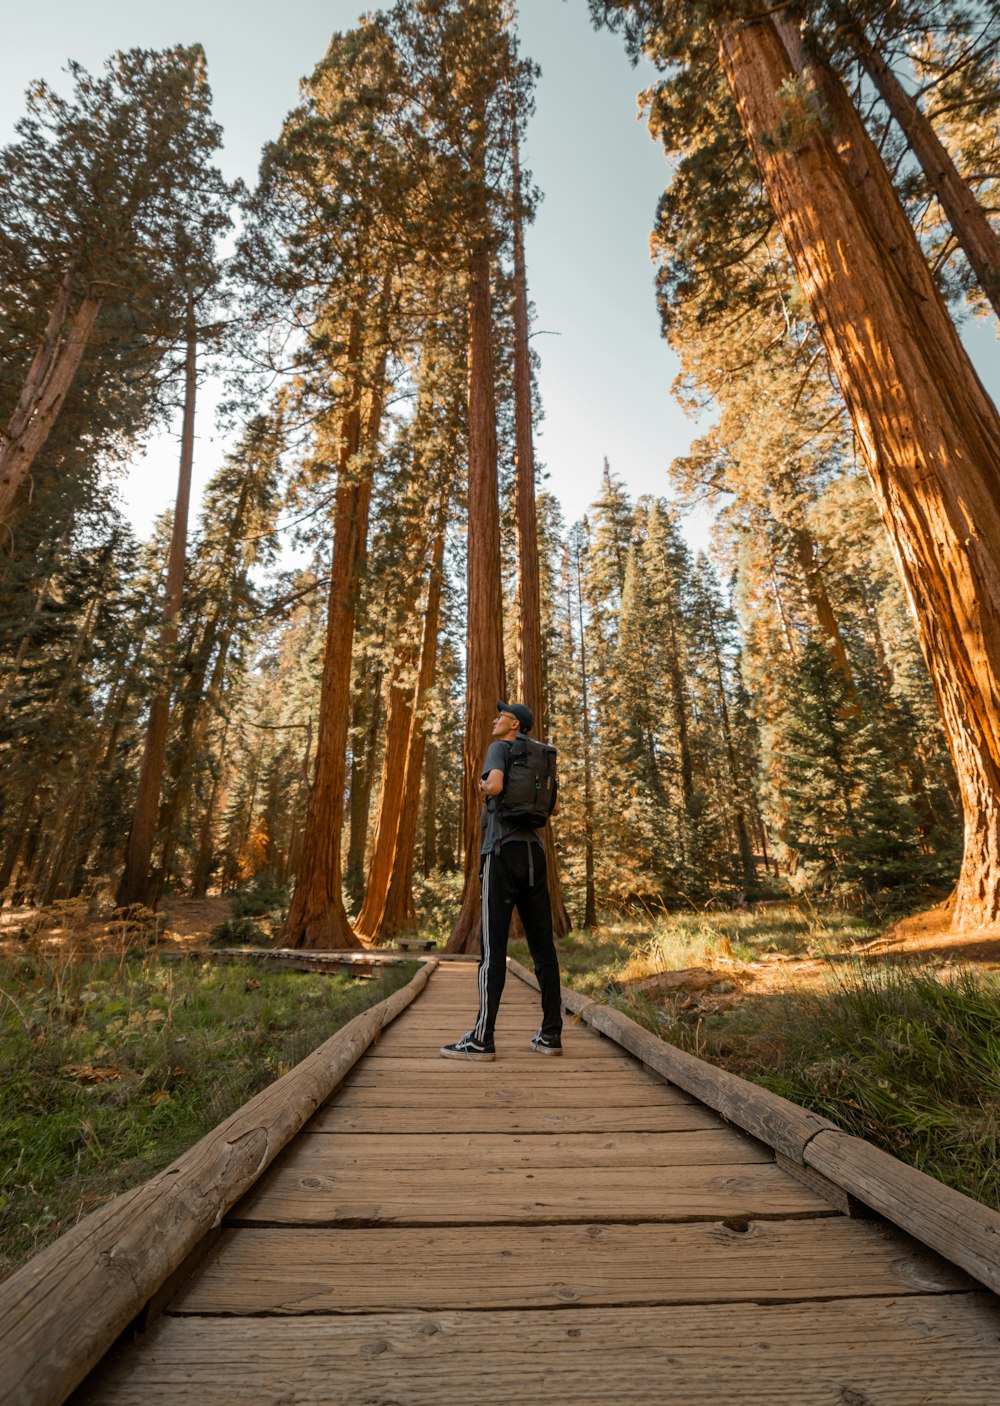 Mann im grauen Hemd mit Rucksack, der auf einem Holzweg steht, der von grünen Bäumen umgeben ist